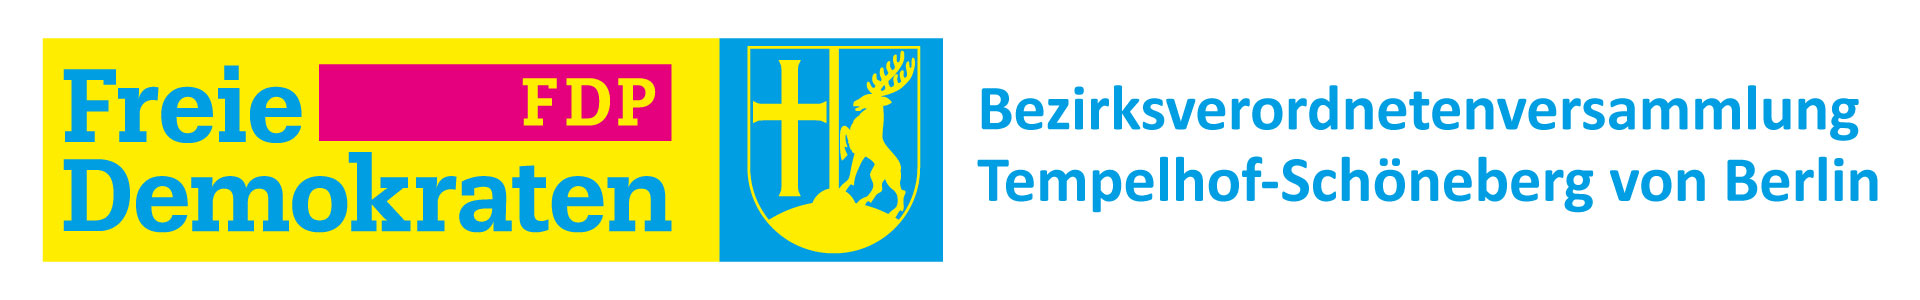 FDP BVV Tempelhof Schöneberg Logo